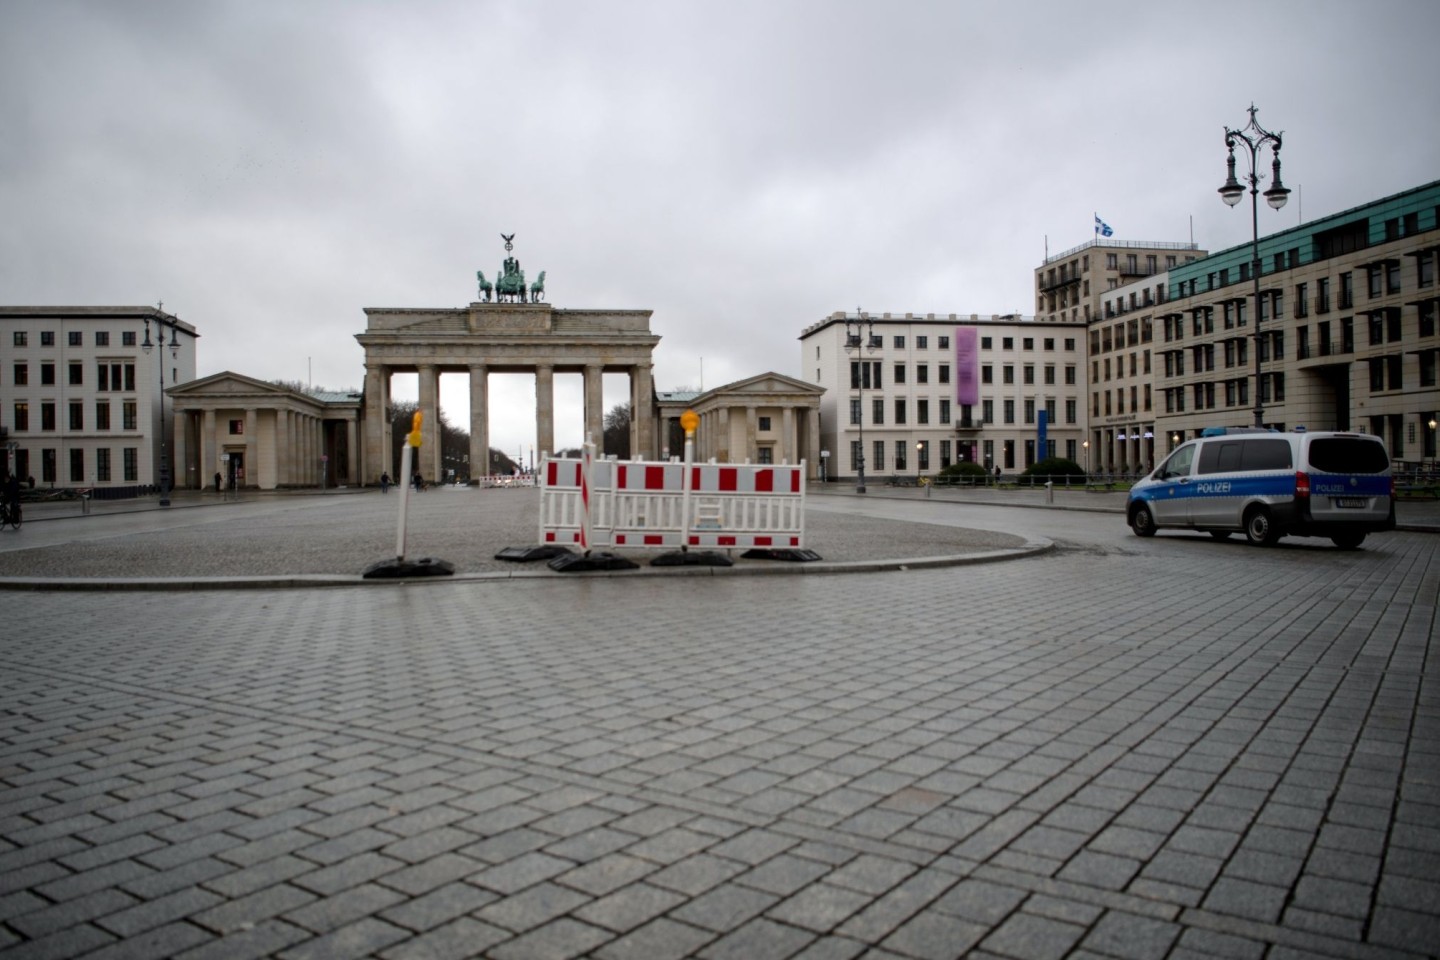 Das Brandenburger Tor in Berlin während des Lockdown.